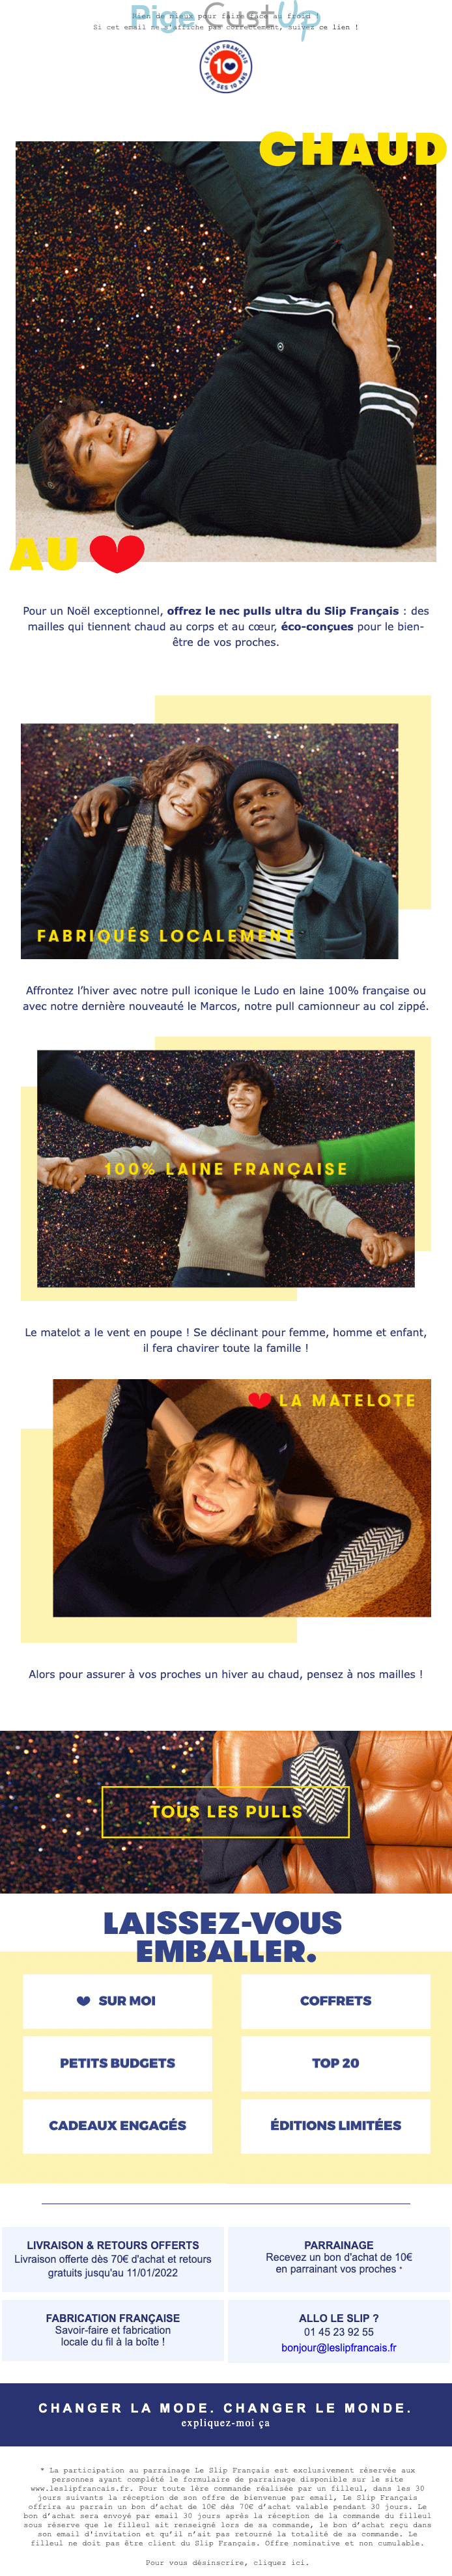 Exemple de Type de media  e-mailing - Le slip français - Marketing relationnel - Newsletter